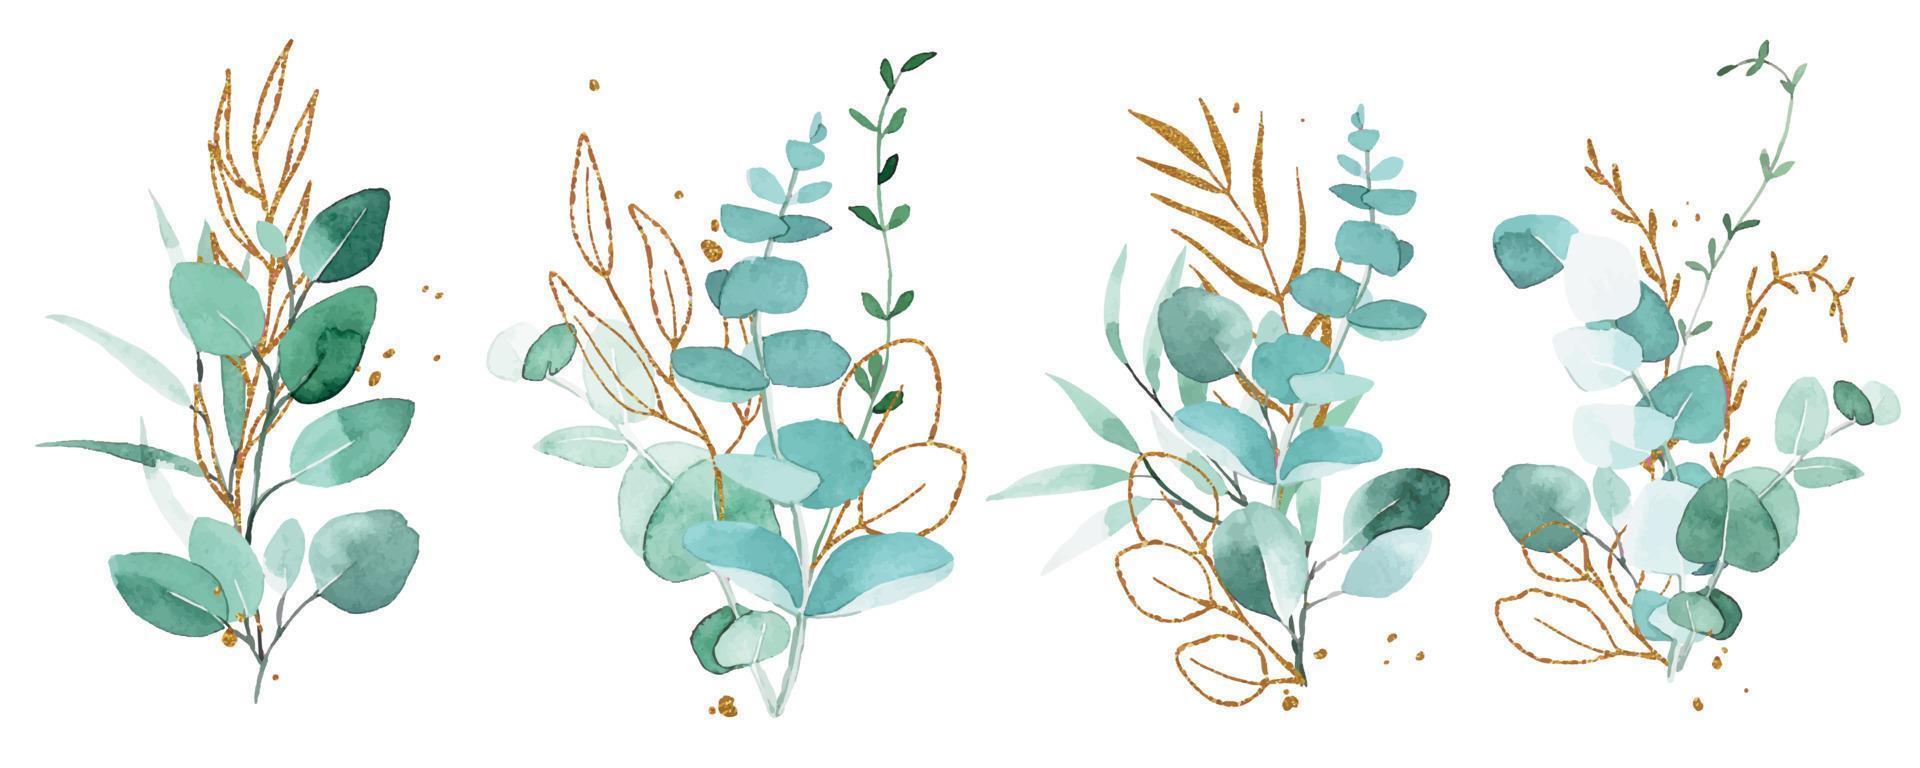 akvarellteckning. set med buketter, kompositioner av eukalyptusblad och gyllene element. gröna och guldblad i vintagestil. vektor